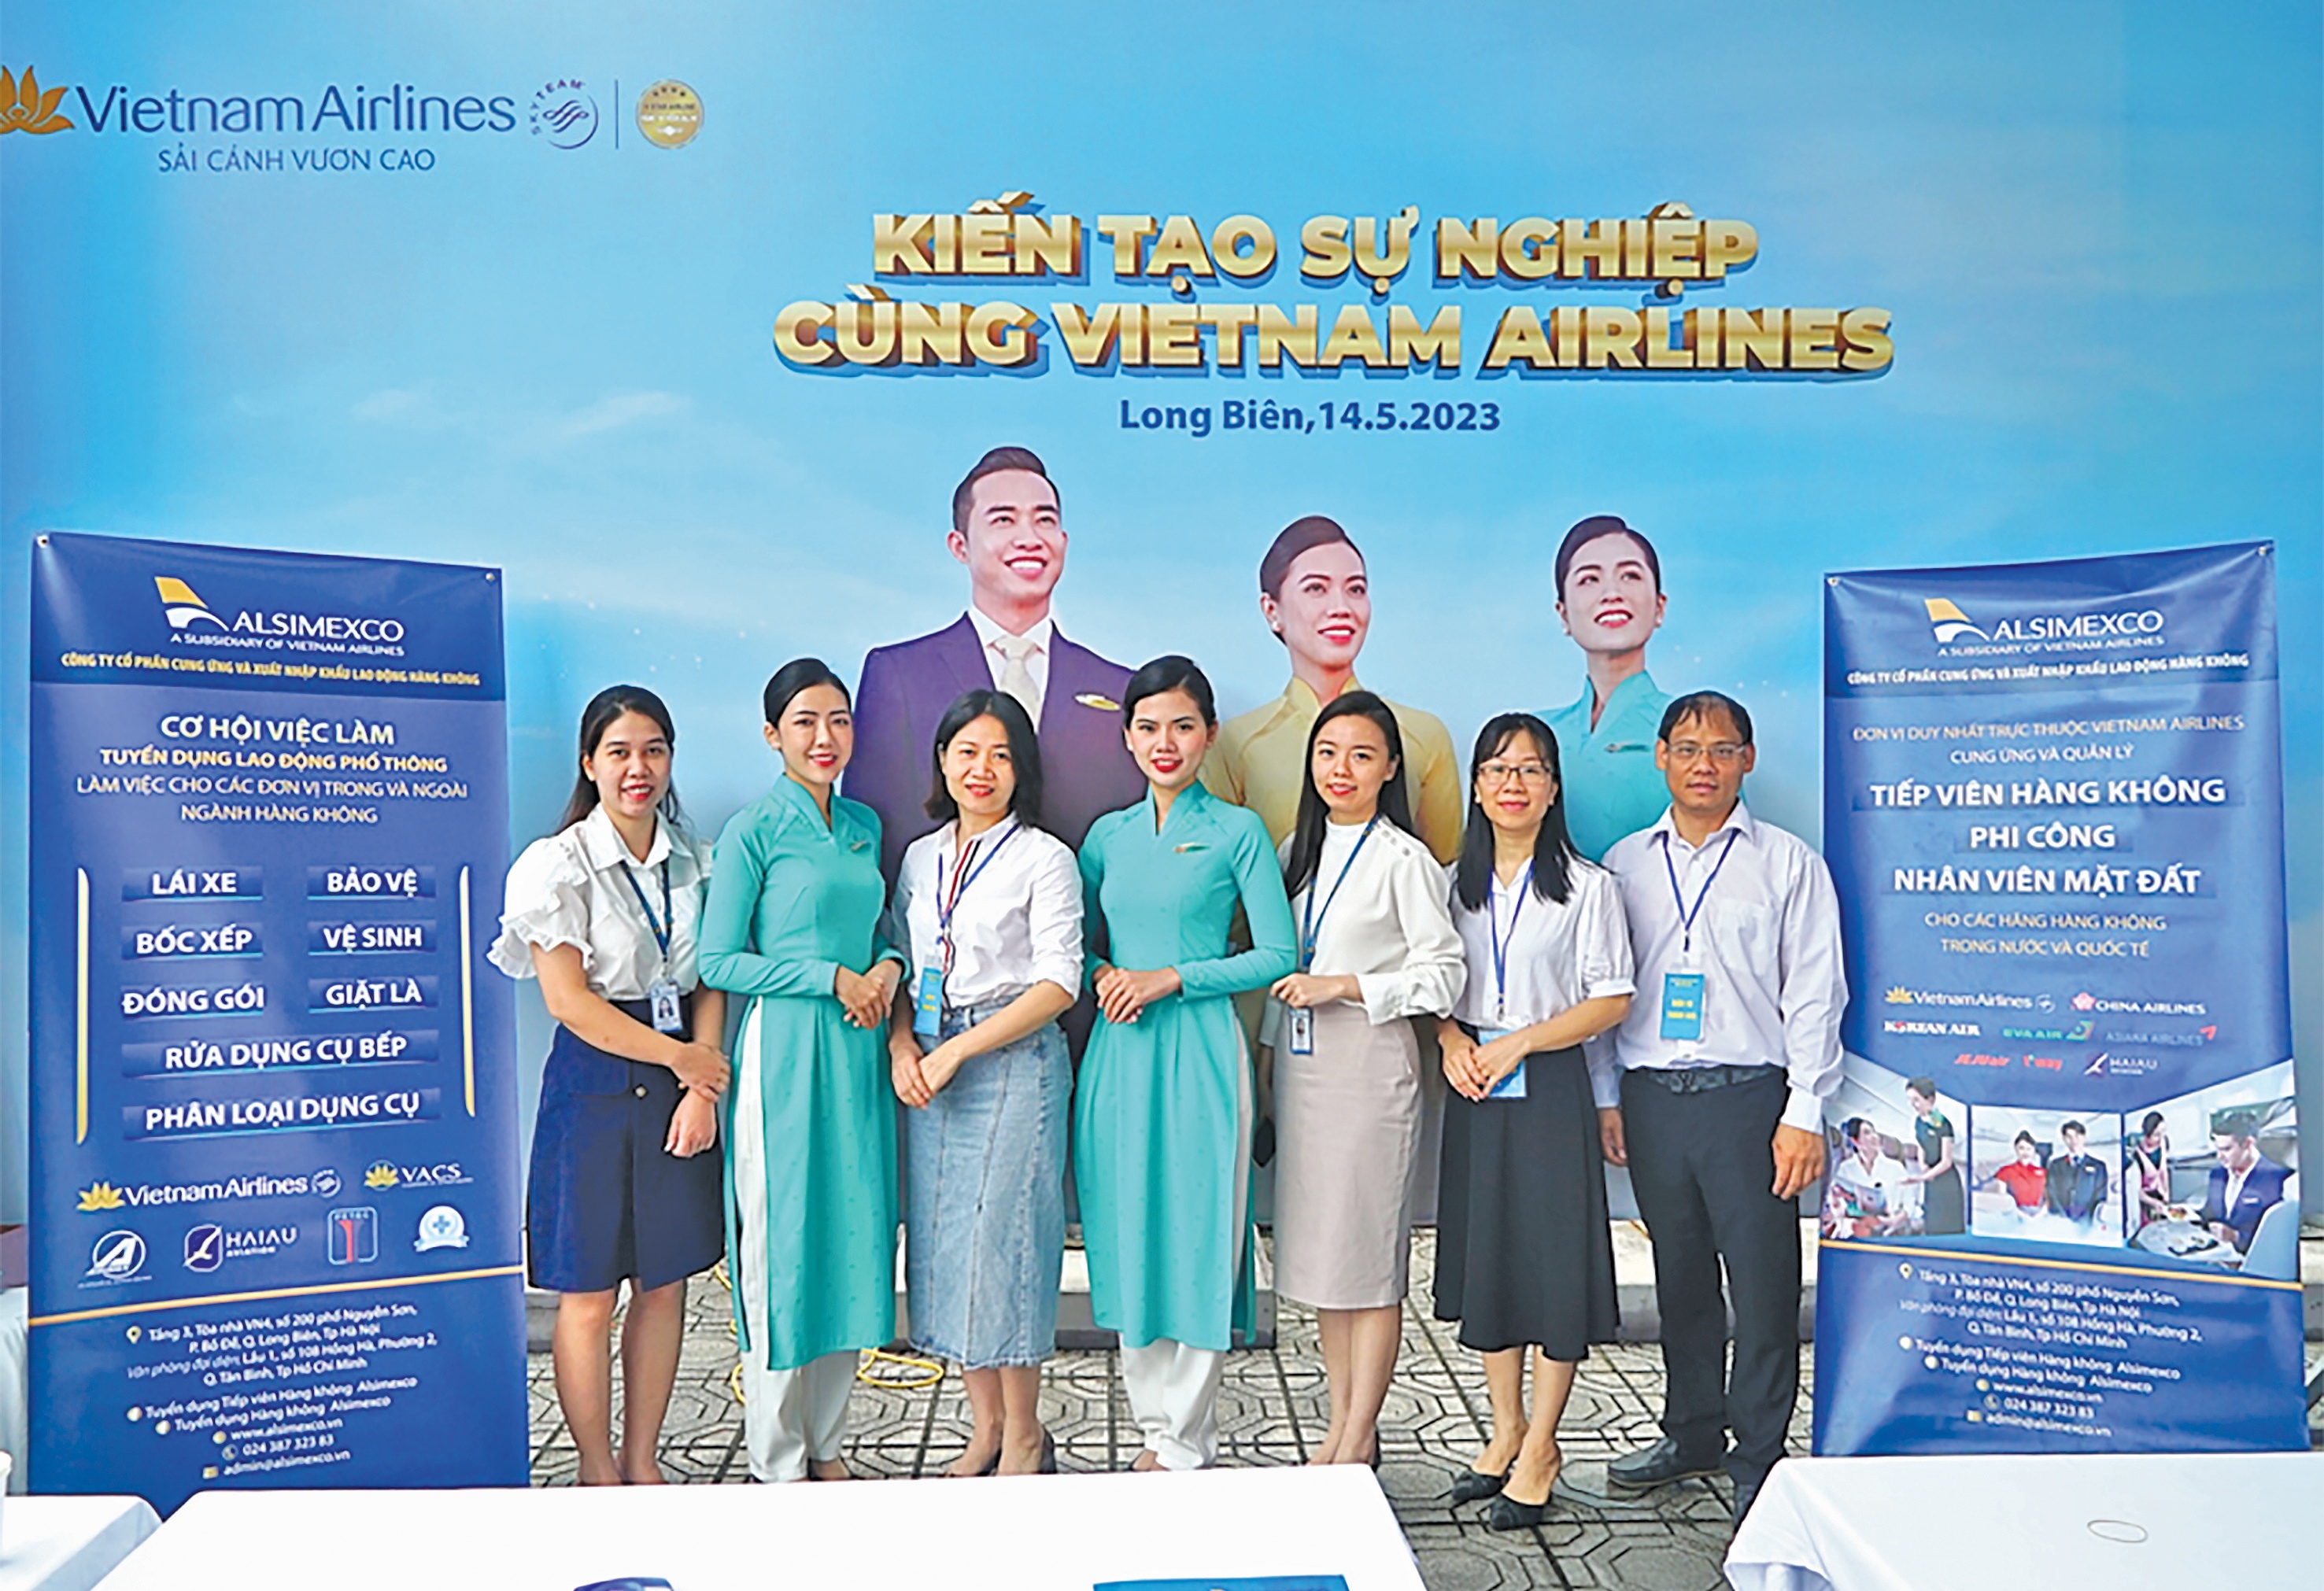 Vietnam Airlines mong muốn gặp gỡ và tuyển dụng những ứng viên tiềm năng, có trình độ, phù hợp với lĩnh vực hàng không